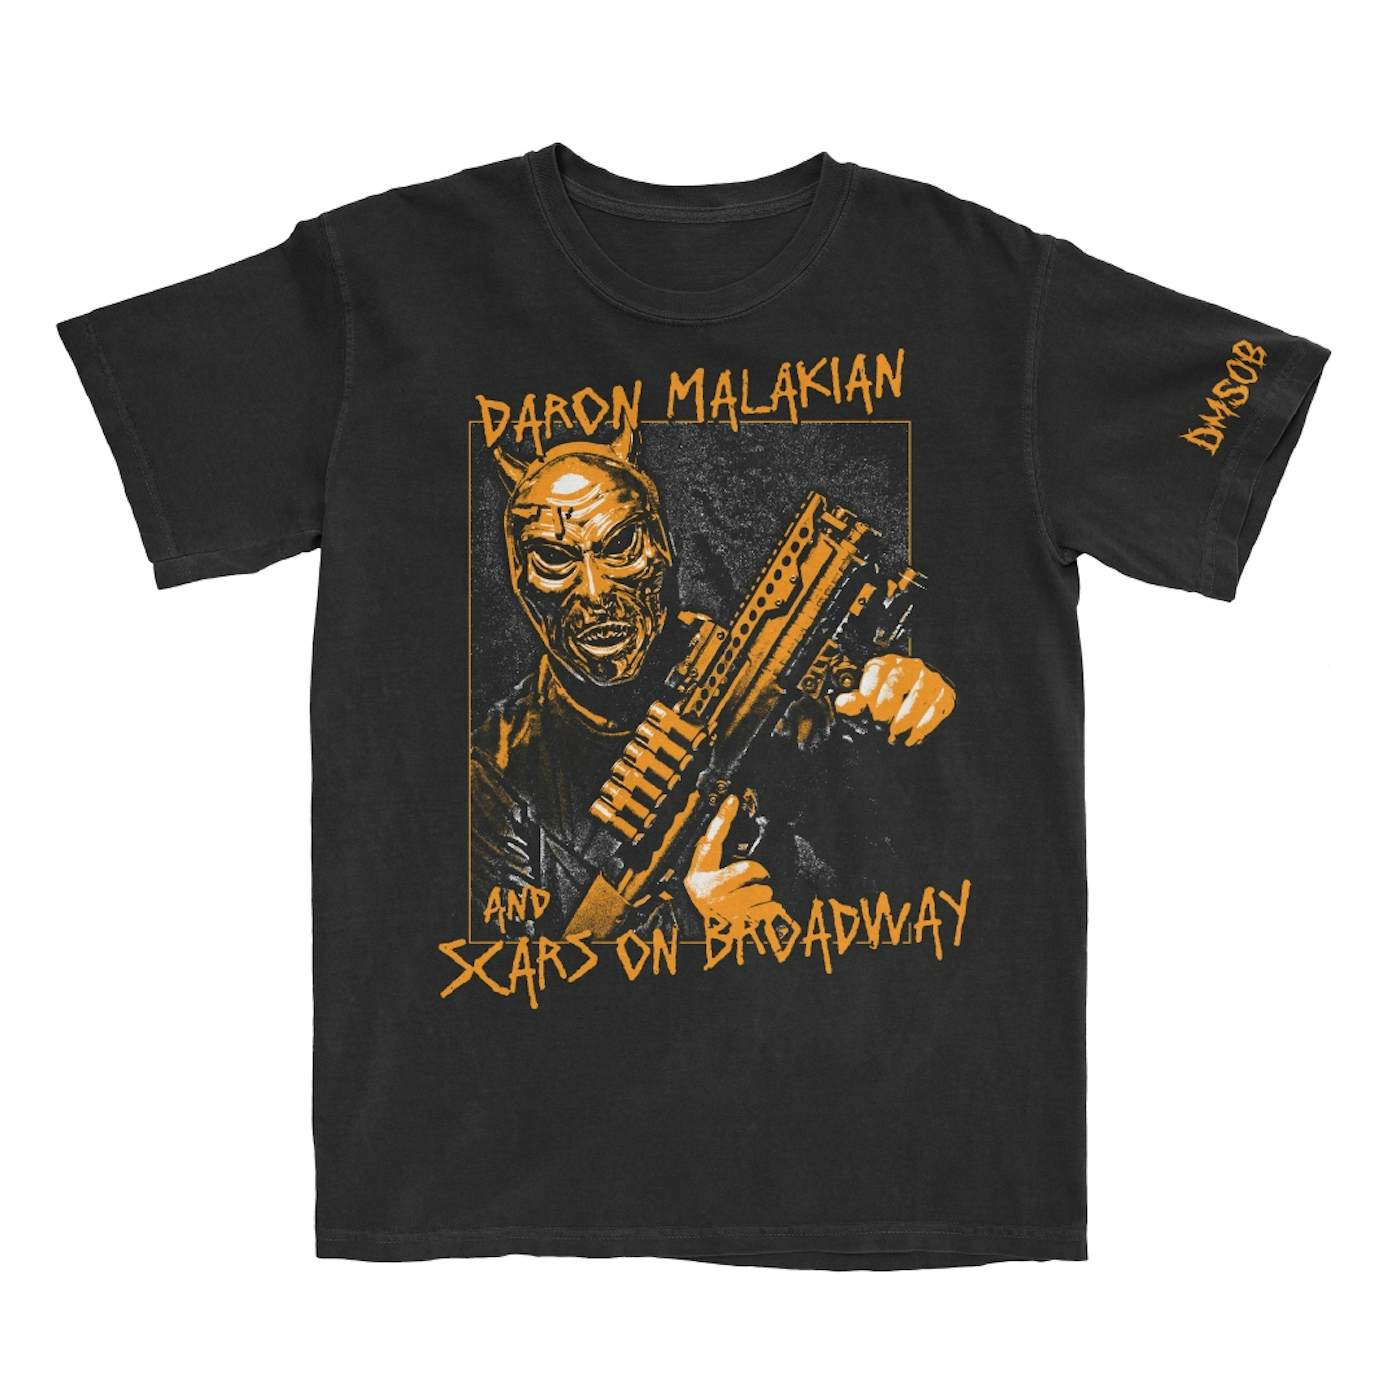 Scars On Broadway Gunner Devil Black T-Shirt